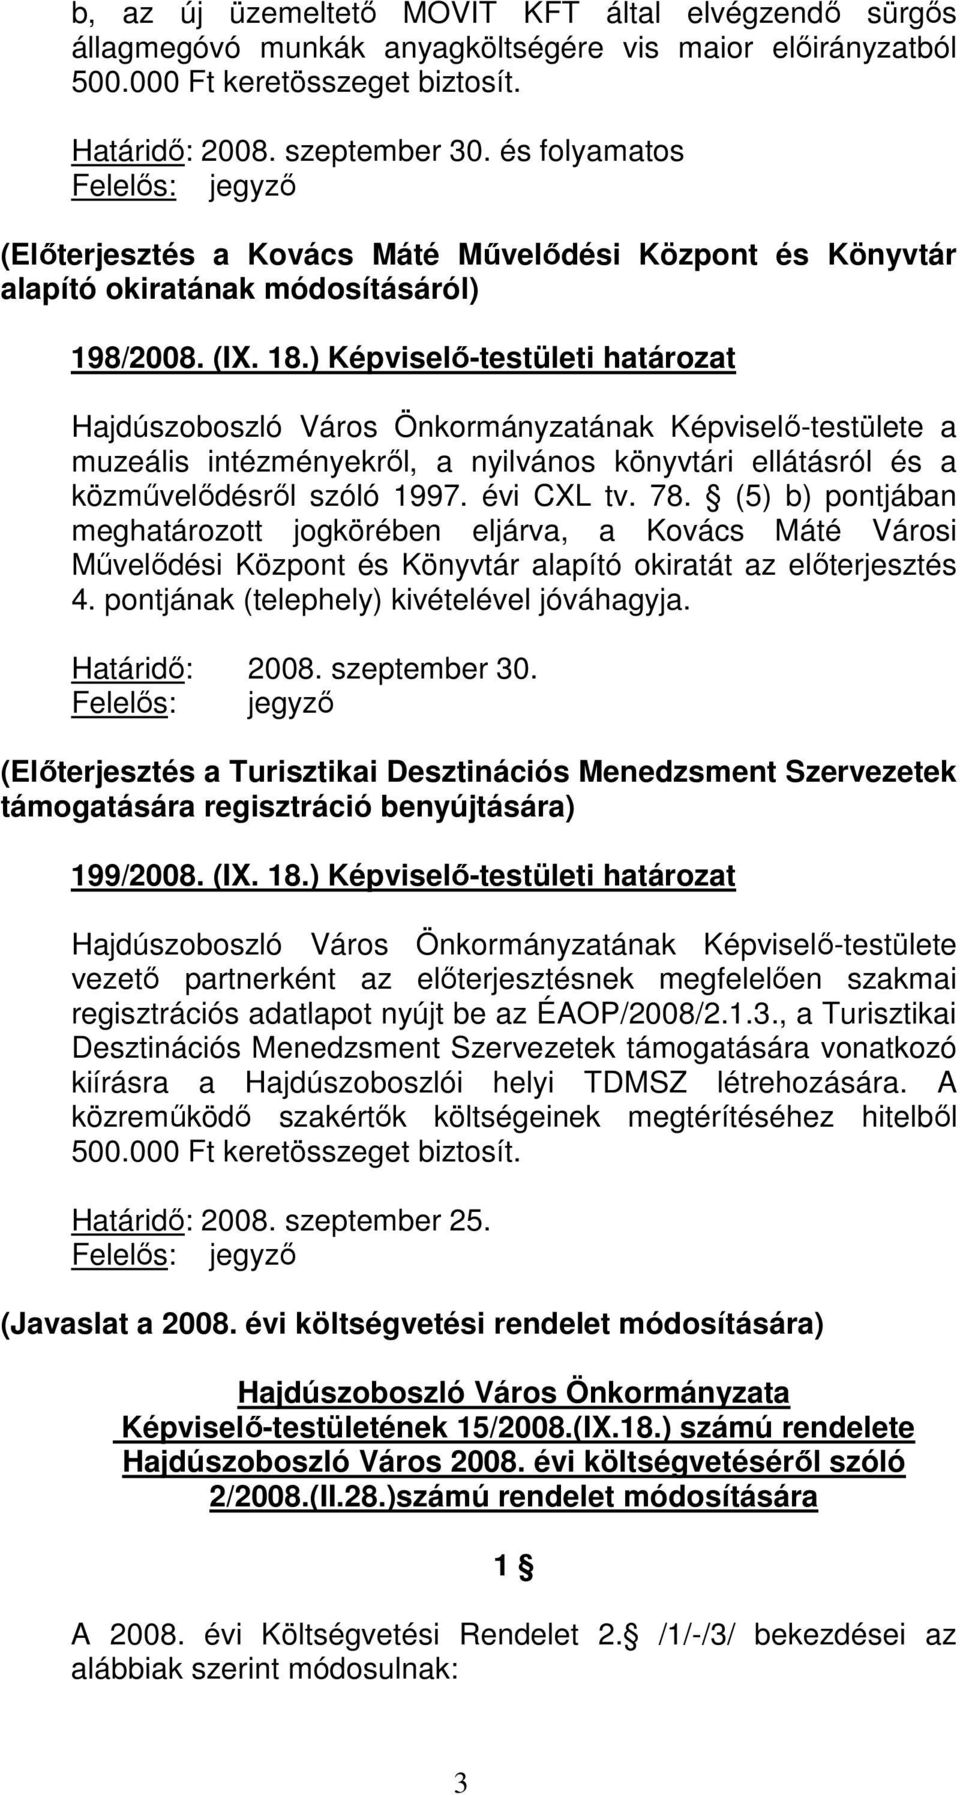 ) Képviselı-testületi határozat Hajdúszoboszló Város Önkormányzatának Képviselı-testülete a muzeális intézményekrıl, a nyilvános könyvtári ellátásról és a közmővelıdésrıl szóló 1997. évi CXL tv. 78.